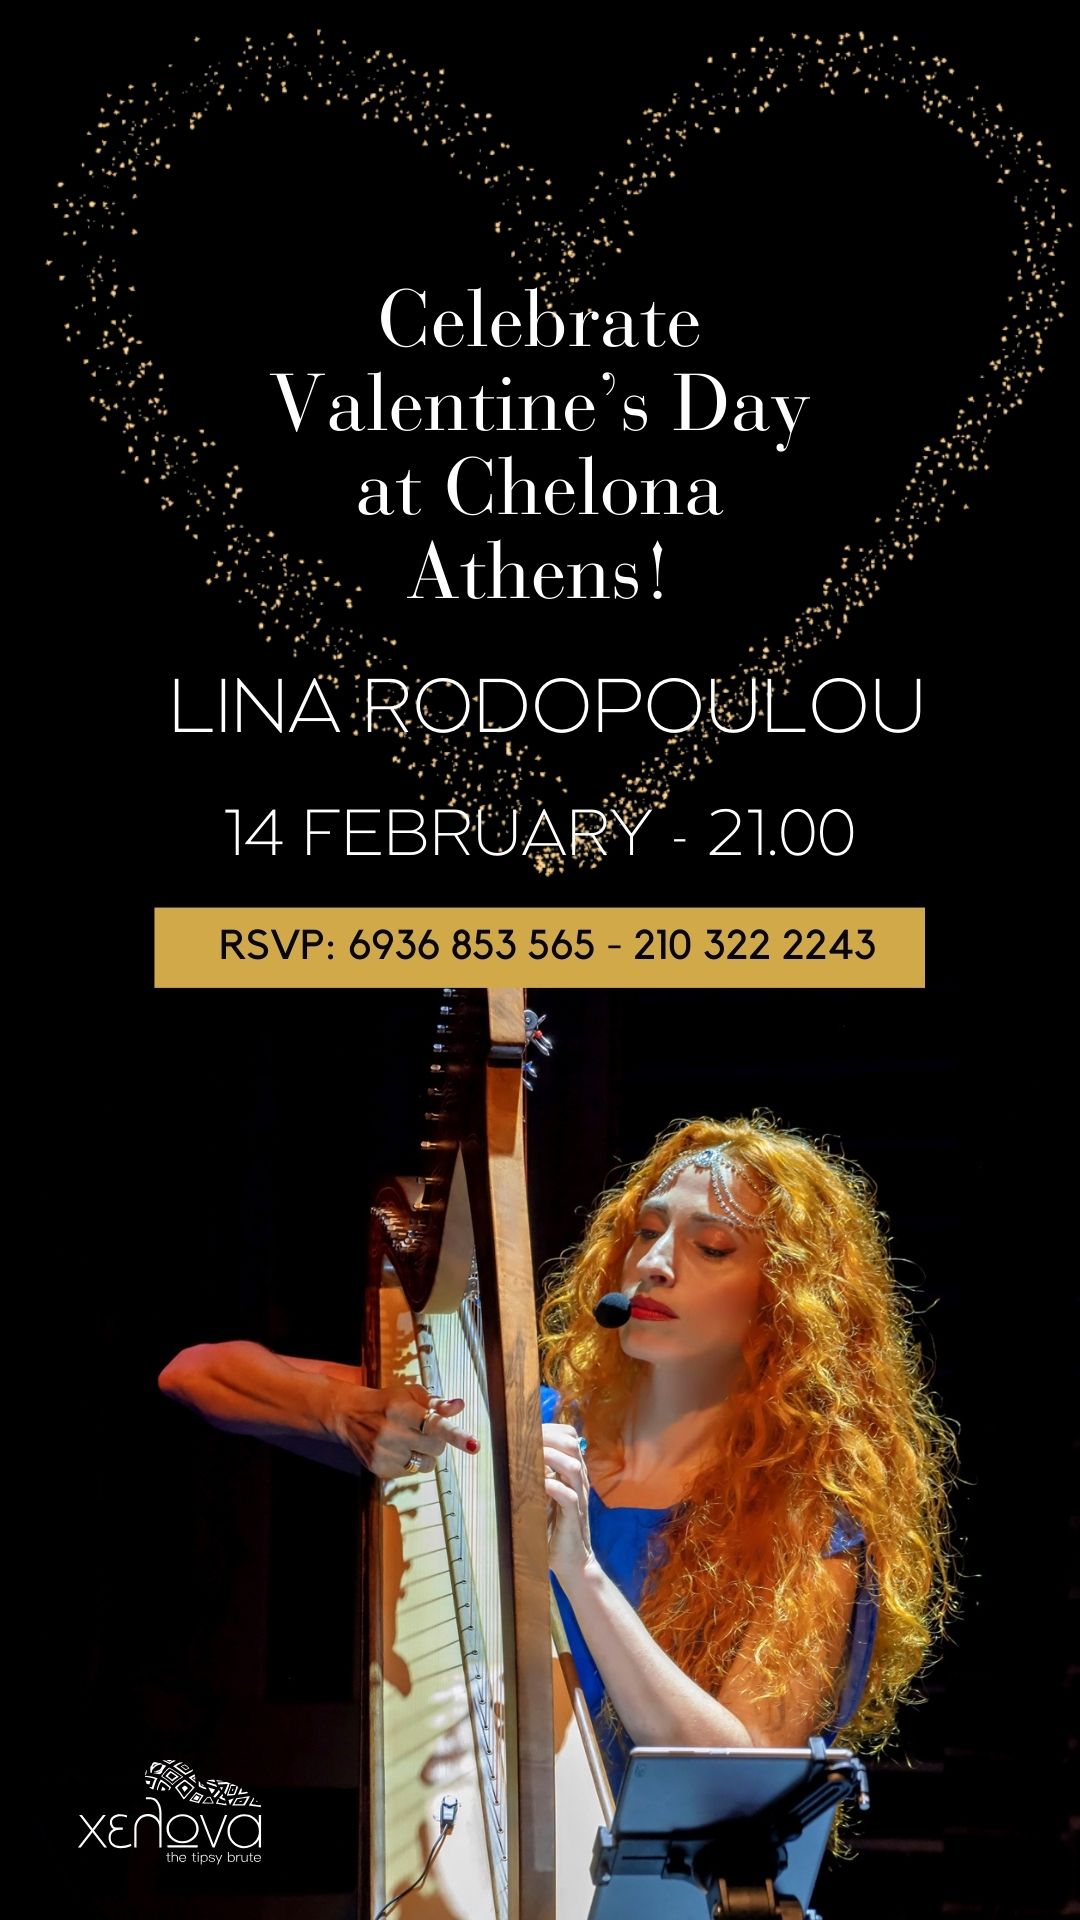 Η-Λίνα-Ροδοπούλου-γιορτάζει-τον-Άγιο-Βαλεντίνο-Τετάρτη-14-Φεβρουαρίου-στην-Χελώνα